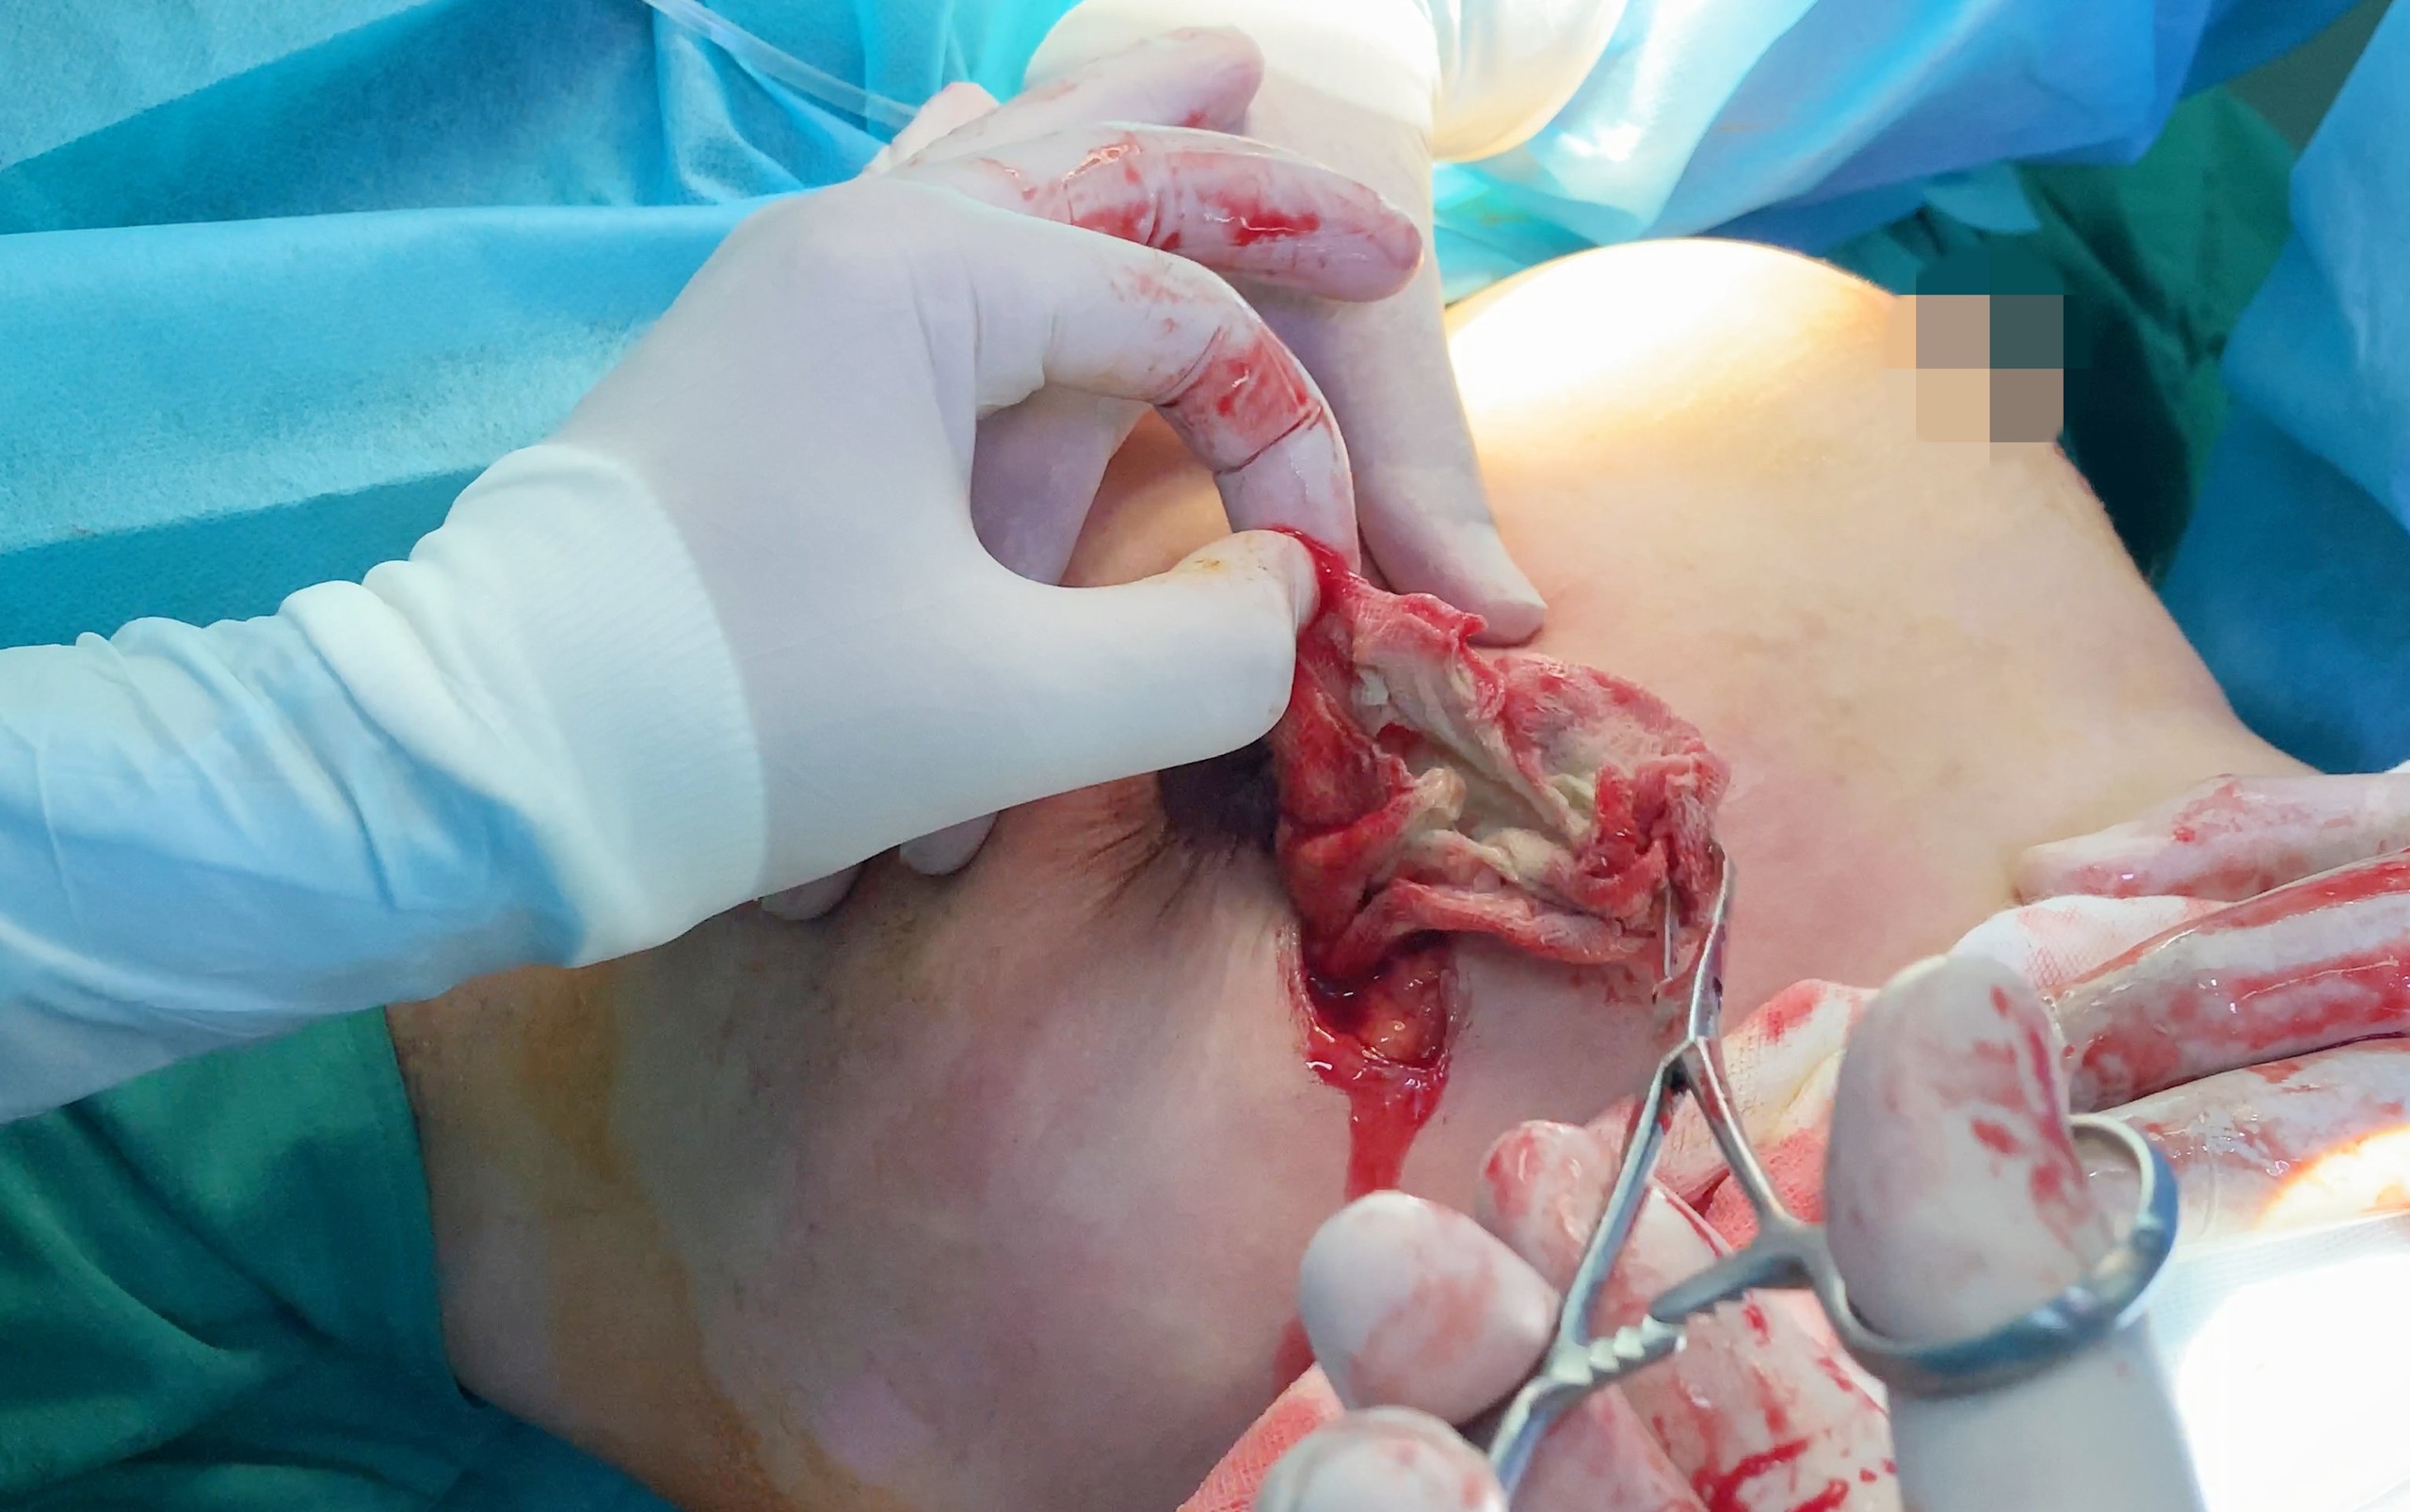 Rút miếng gạc bị bỏ quên trong ngực bệnh nhân qua lổ thủng 5cm2